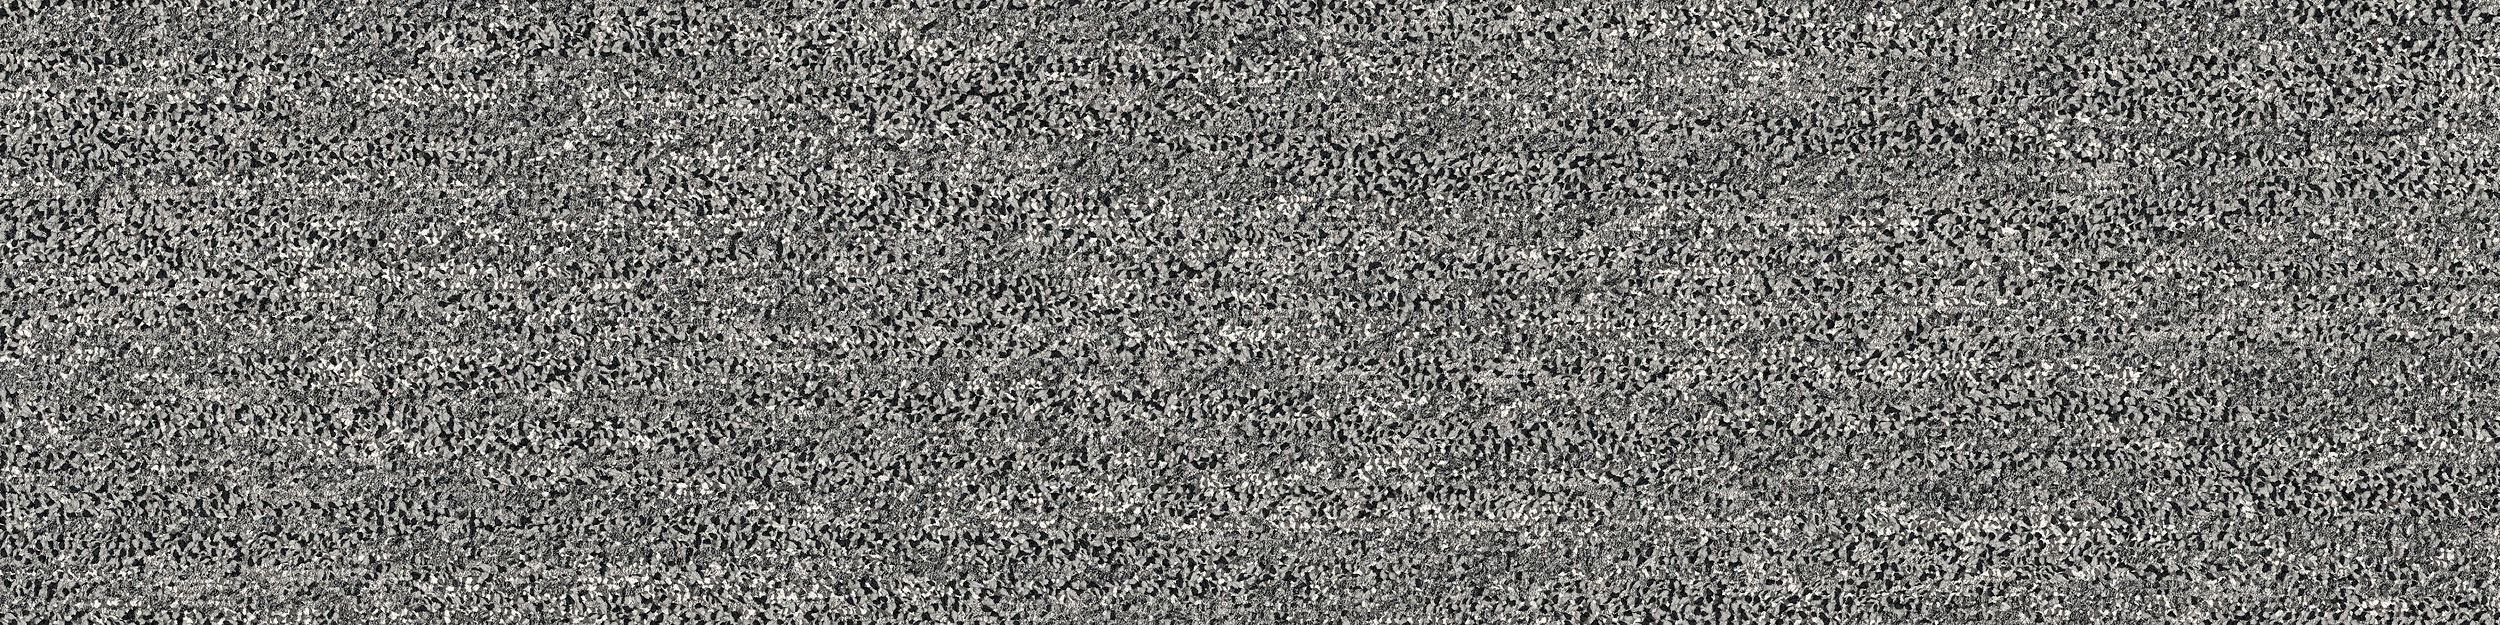 Mantle Rock Carpet Tile In Grey Stone numéro d’image 2